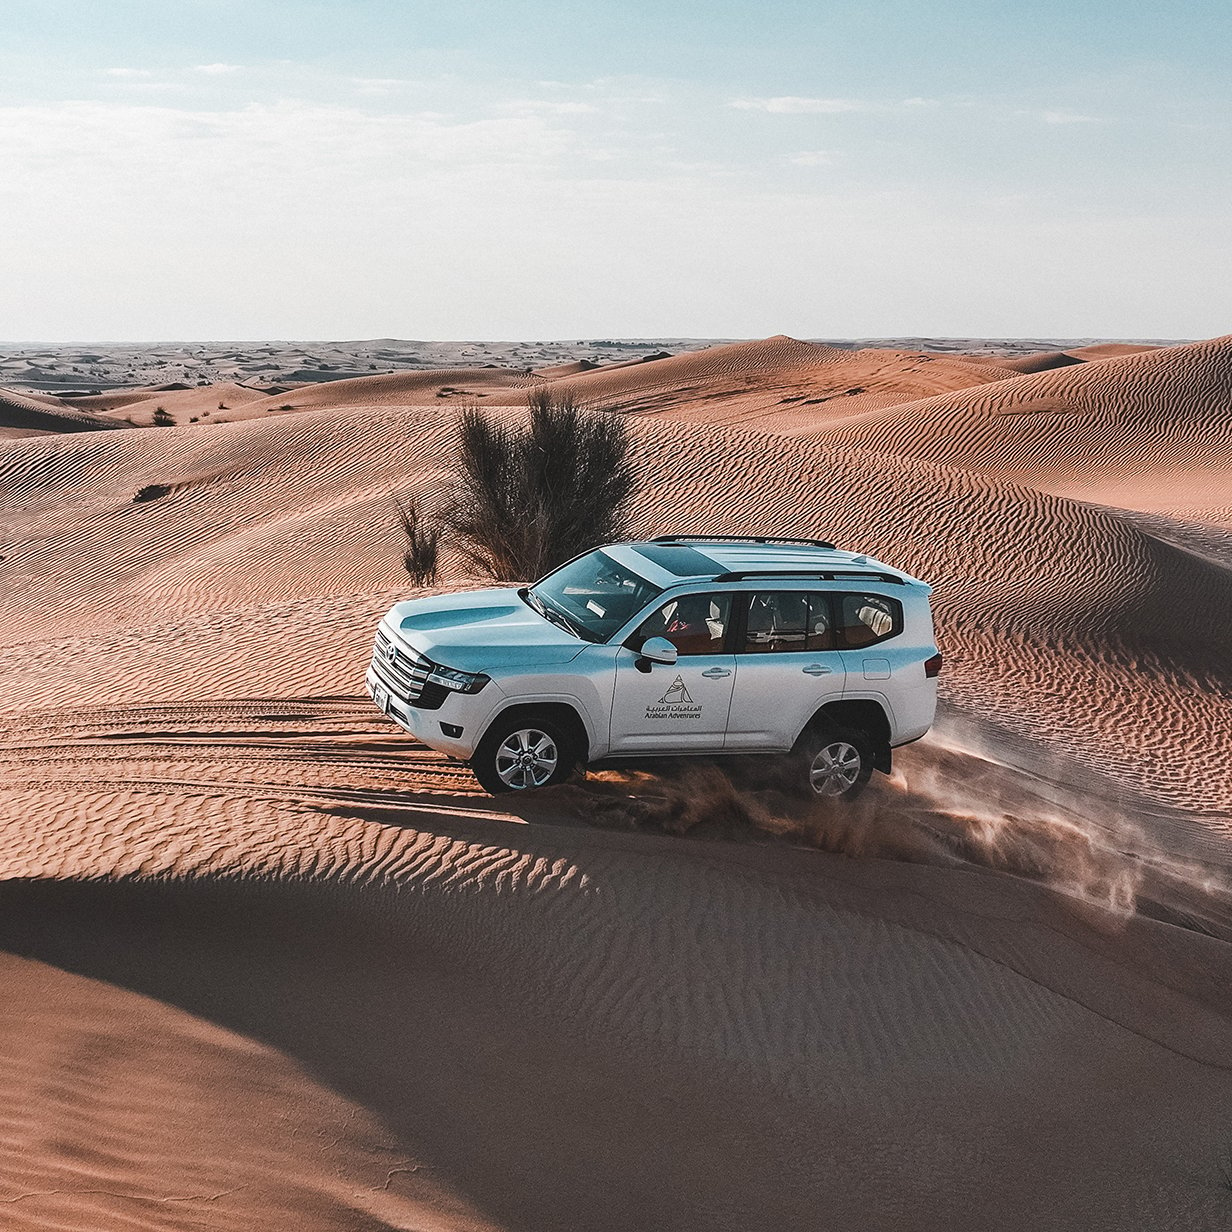 Morning Desert Adventure in Dubai - Shared Vehicle, , large